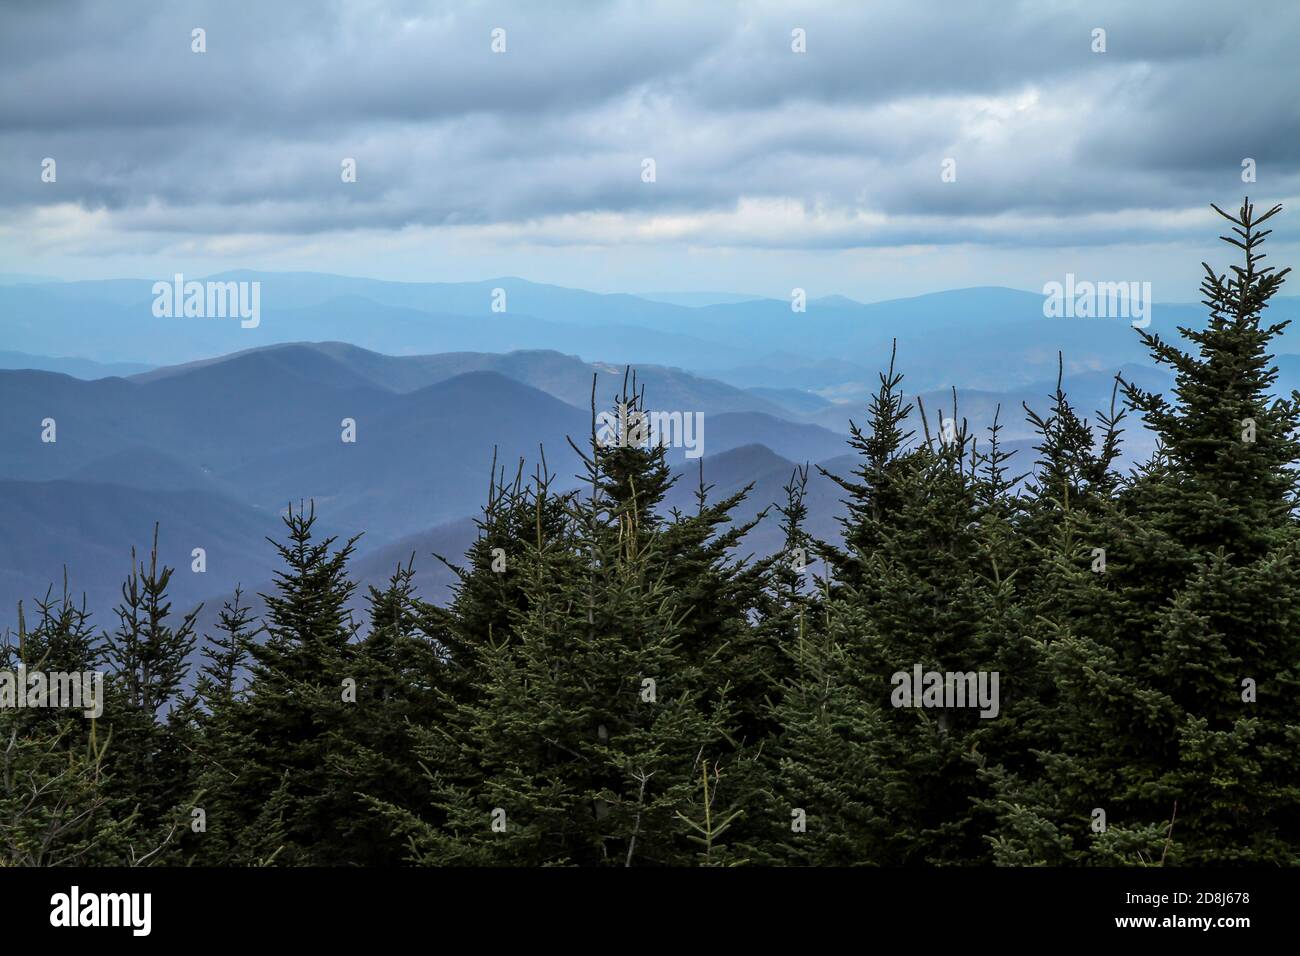 Una vista delle Blue Ridge Mountains del North Carolina dalla cima del Monte Mitchell, la vetta più alta ad est del fiume Mississippi, alta 6,684 metri. Foto Stock